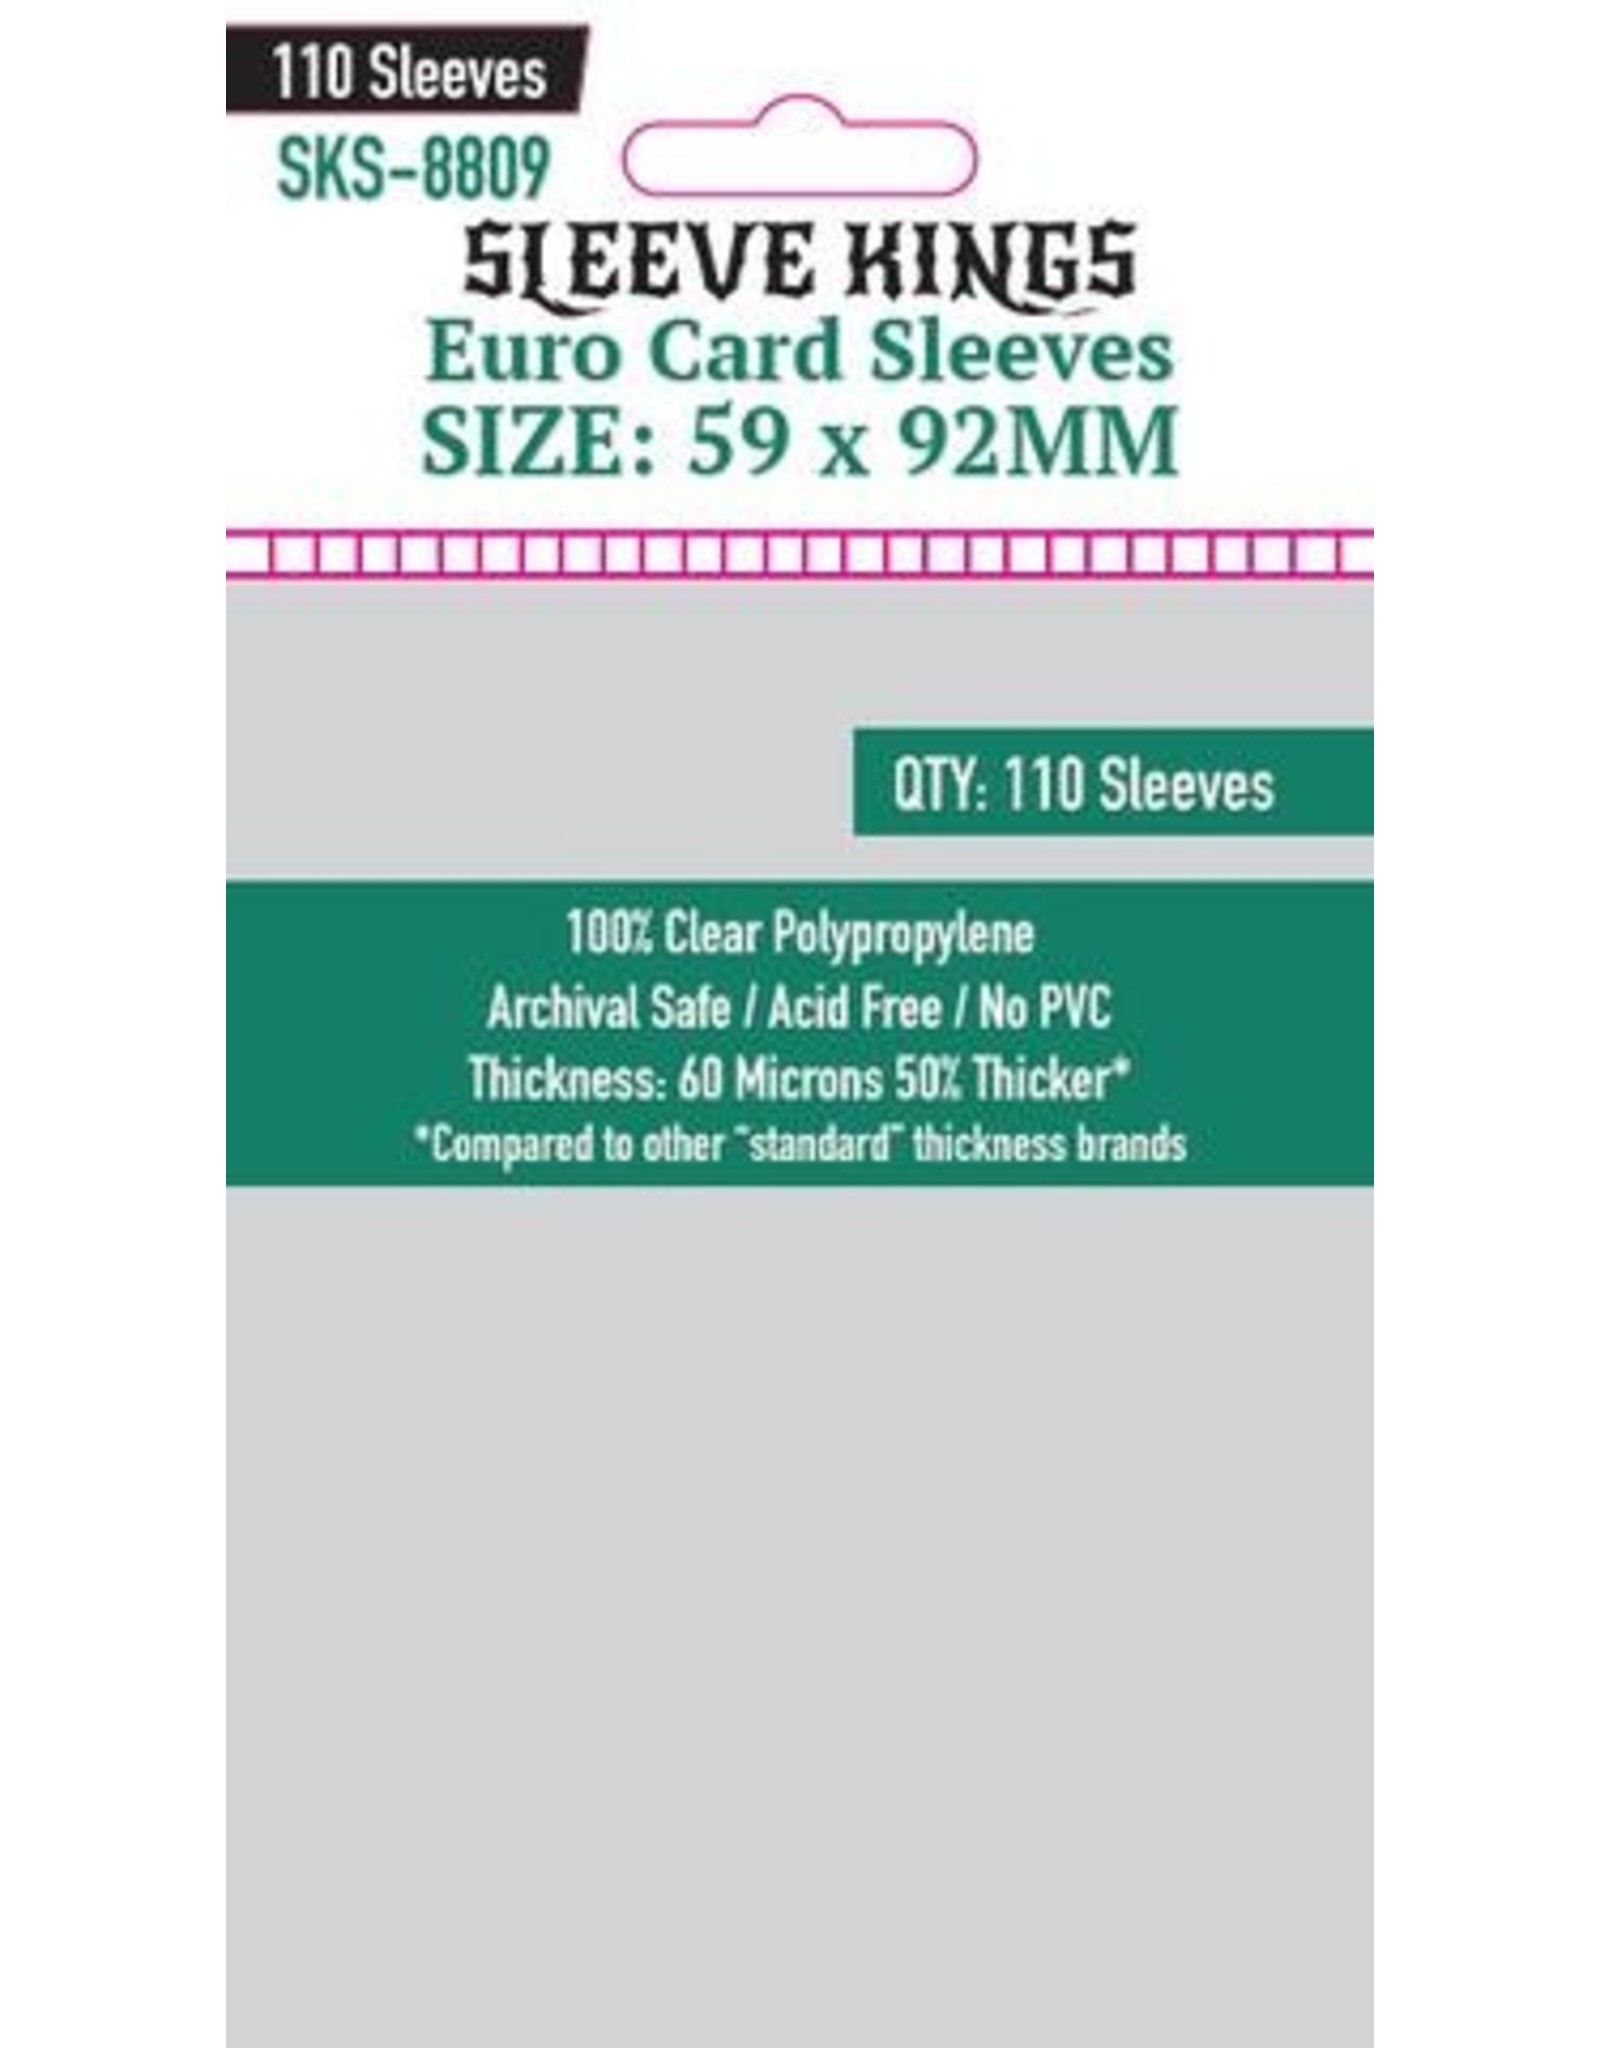 Sleeve Kings Sleeve Kings Euro Card Sleeves (59x92mm) - 110 Pack